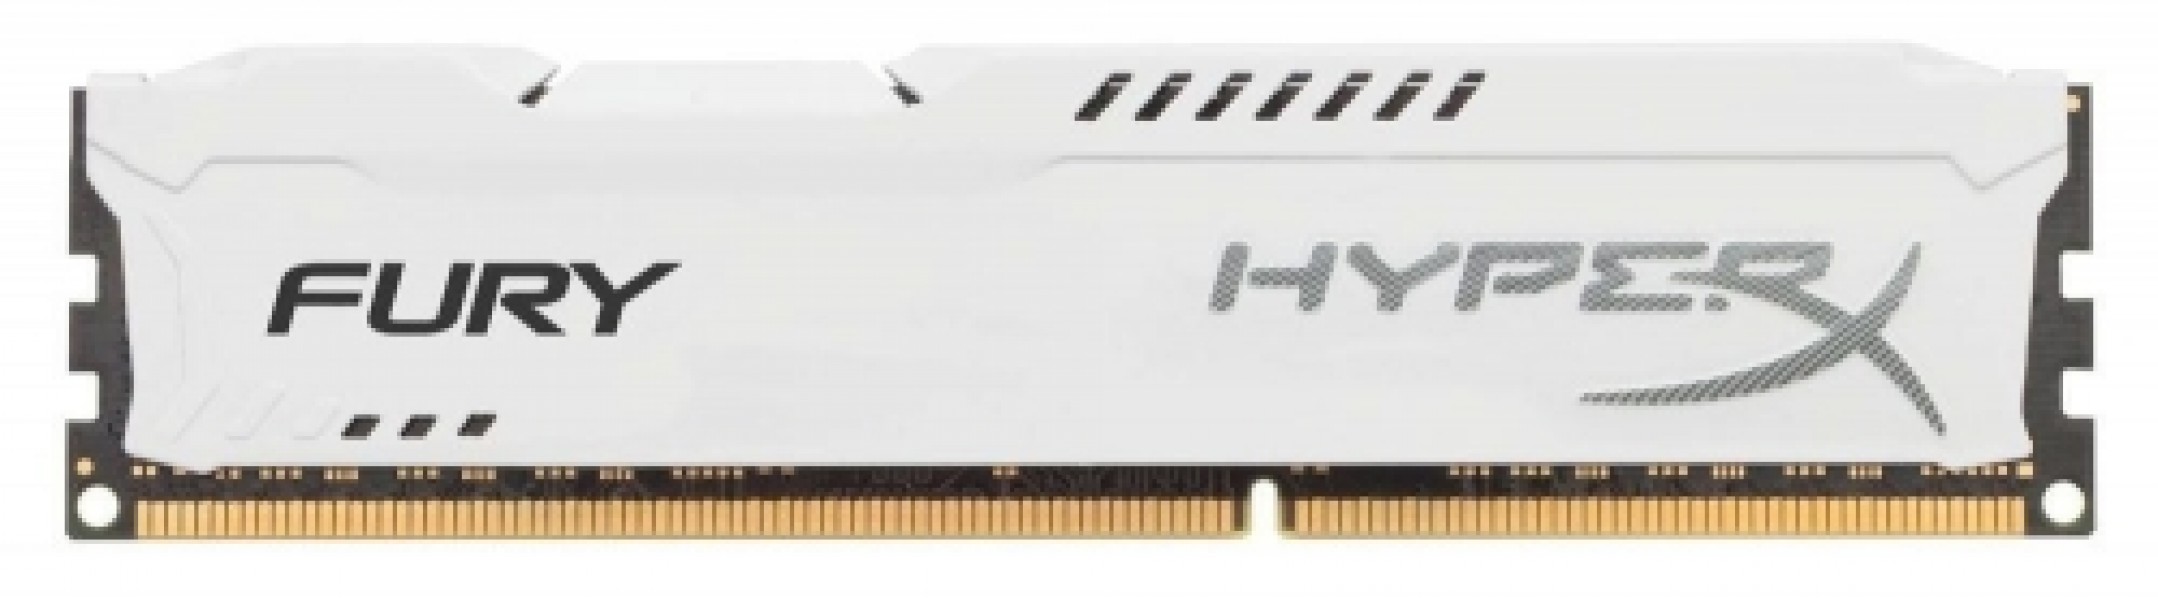 Kingston 4GB DDR3 PC14900 CL10 DIMM HyperX Fury White HX318C10FW/4